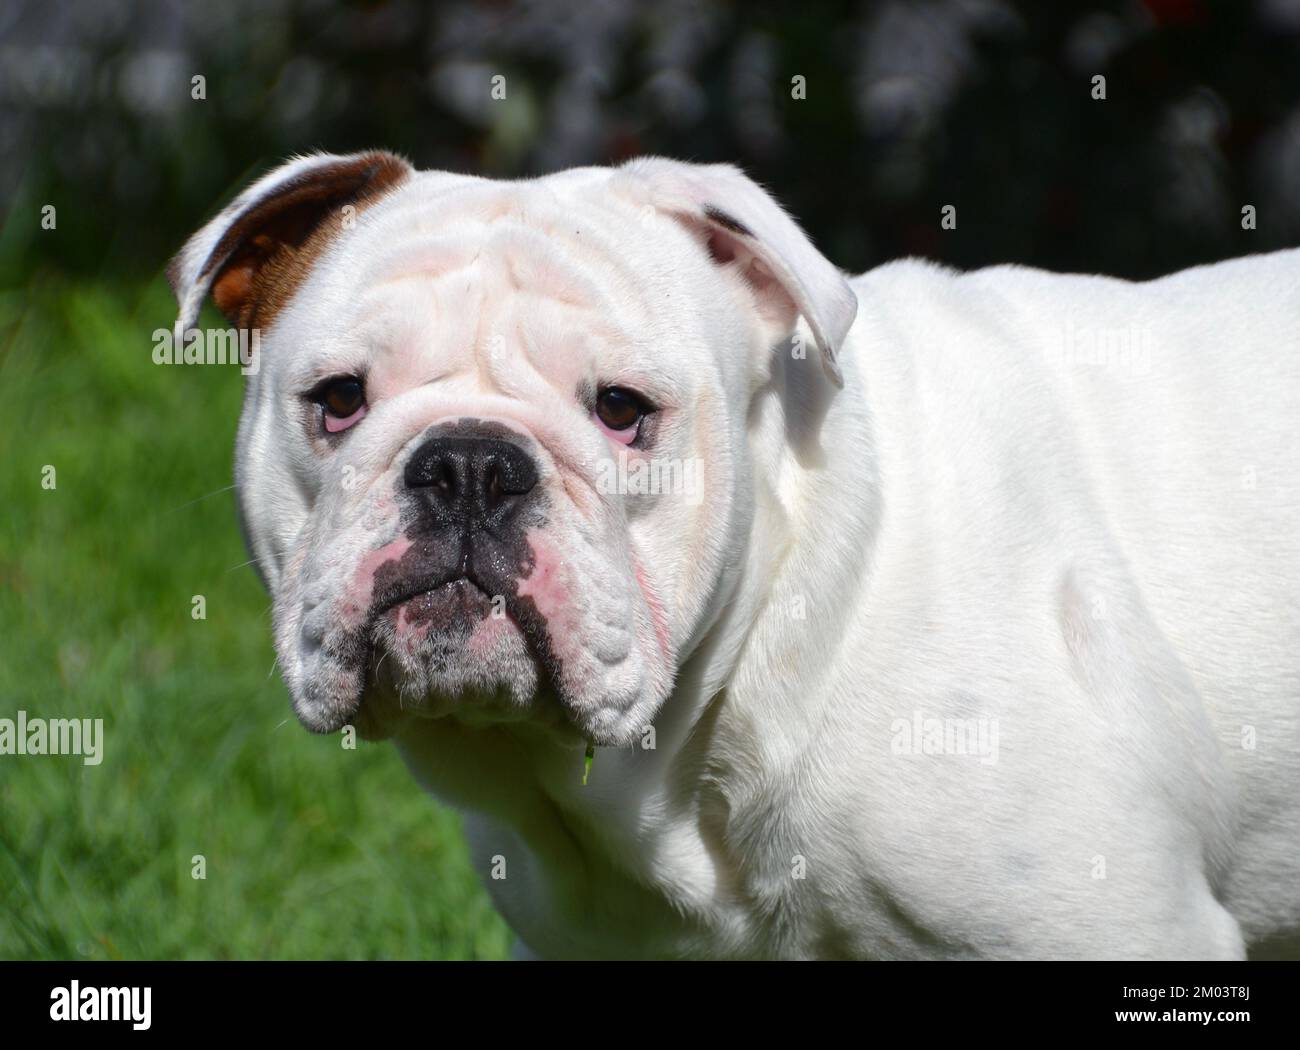 Prise de vue d'un jeune chien Bulldog anglais ou britannique dans le jardin en regardant directement l'appareil photo Banque D'Images